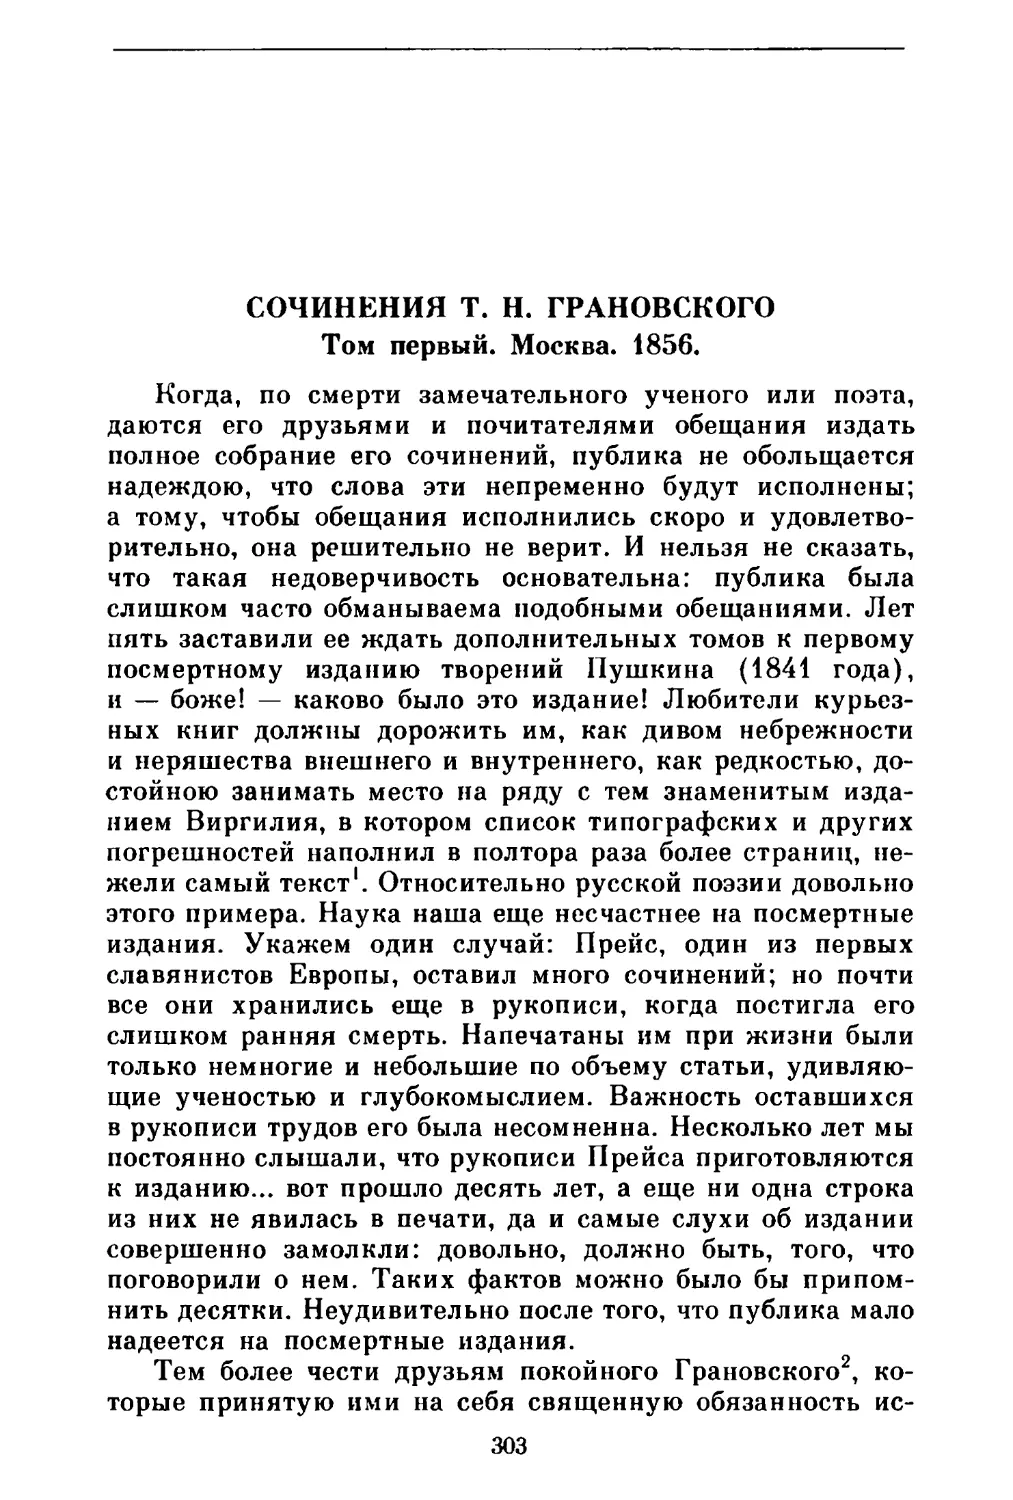 Сочинения Т. Н. Грановского. Том первый. Москва. 1856